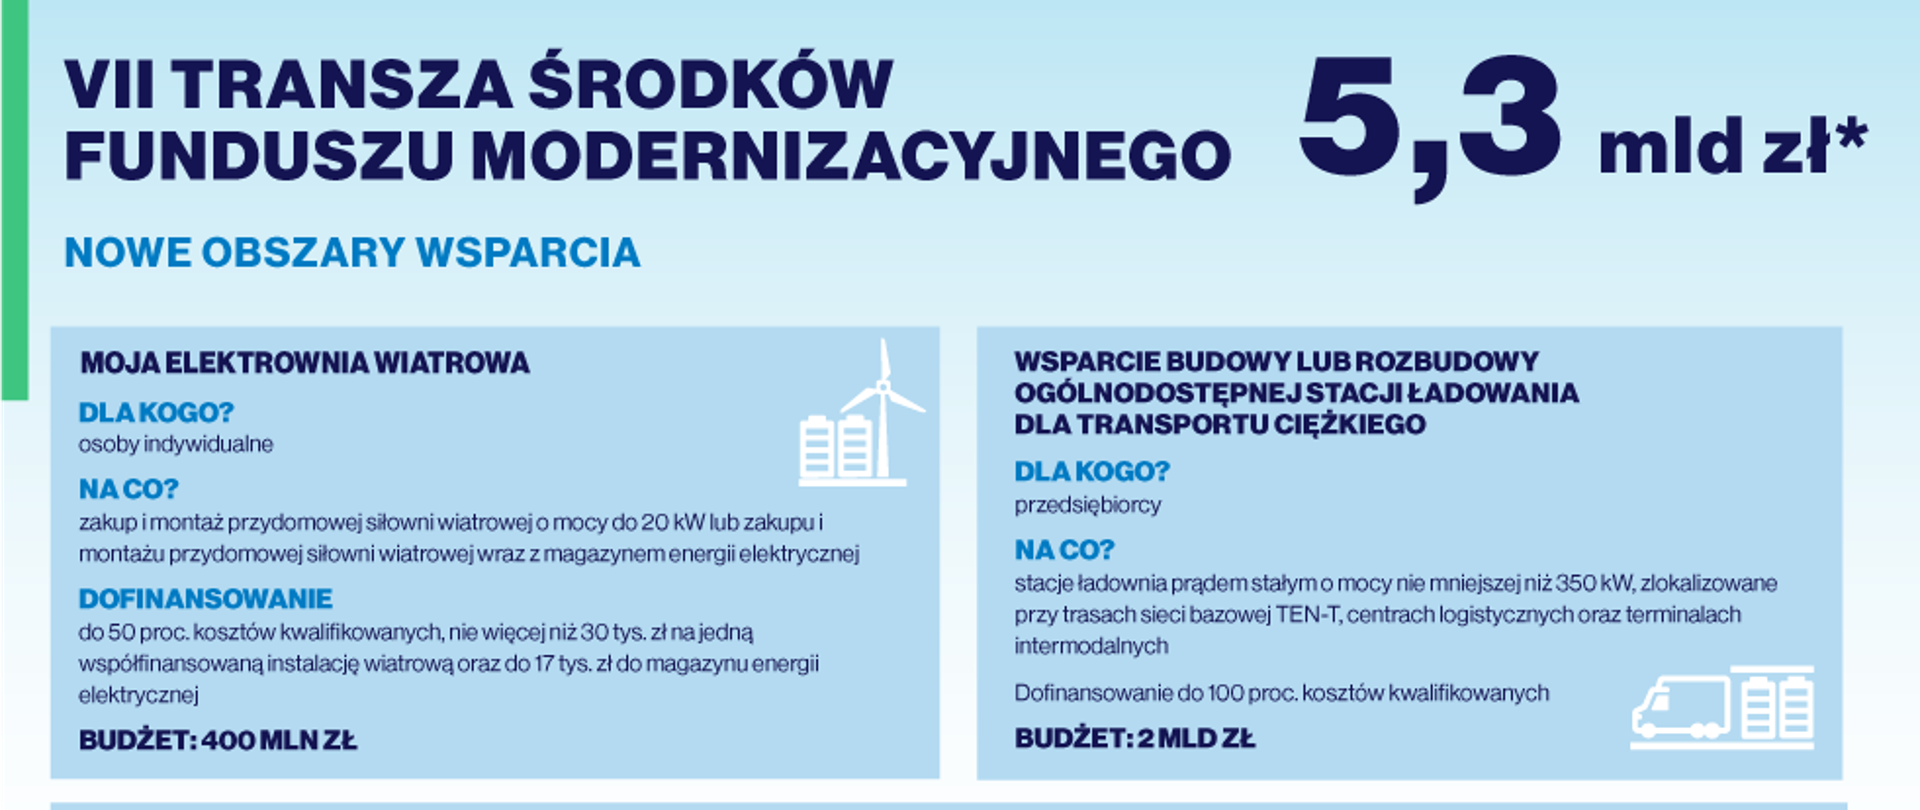 Plansza informacyjna VII Transza środków Funduszu Modernizacyjnego dla programu Moja Elektrownia Wiatrowa